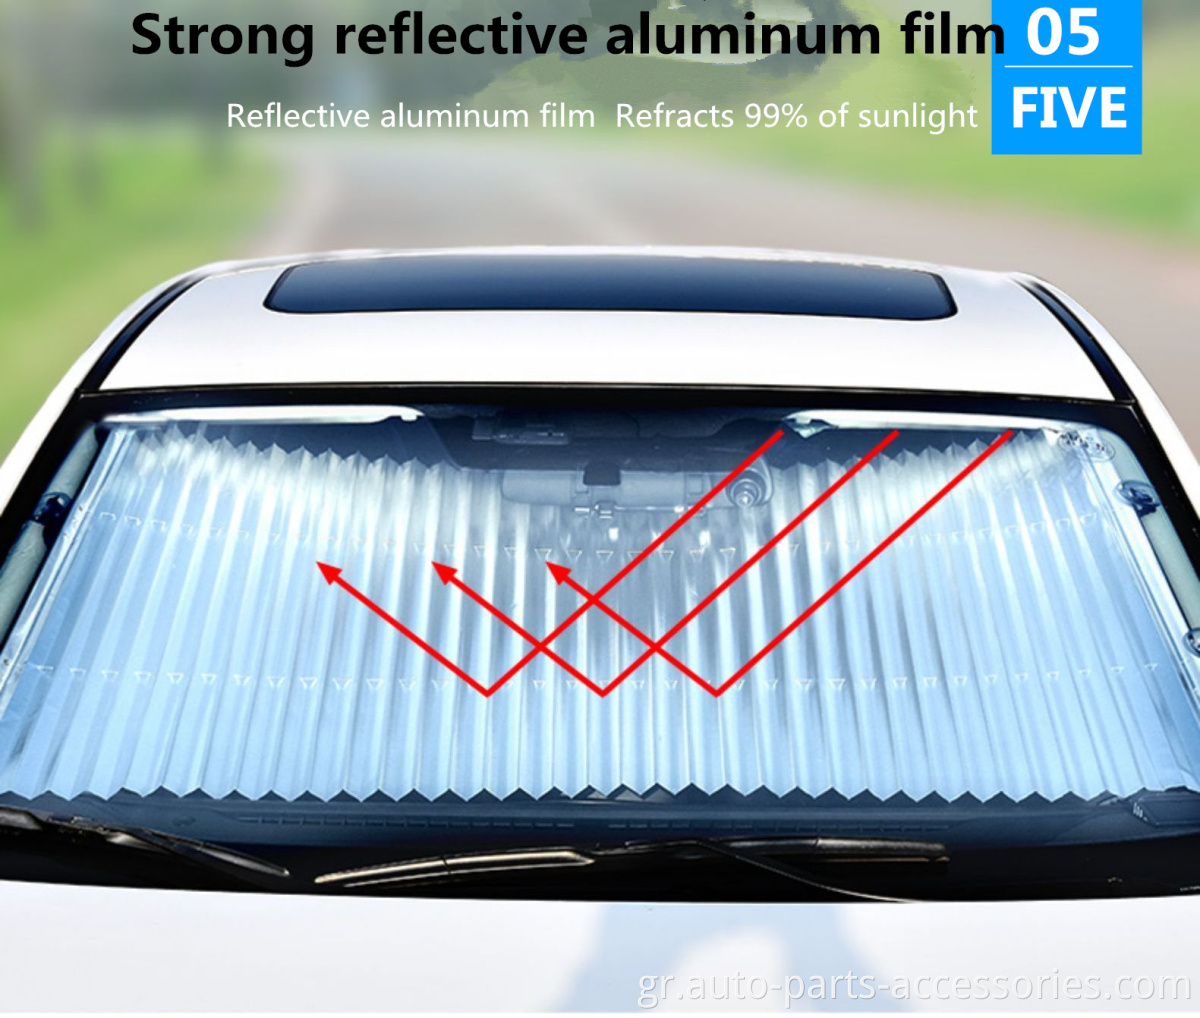 Αναβάθμιση αυτόματης συρρίκνωσης UV ακτίνες θερμότητας μπλοκ μπροστινό κάλυμμα παραθύρου πτυσσόμενο πλήρες κάλυμμα για το αυτοκίνητο